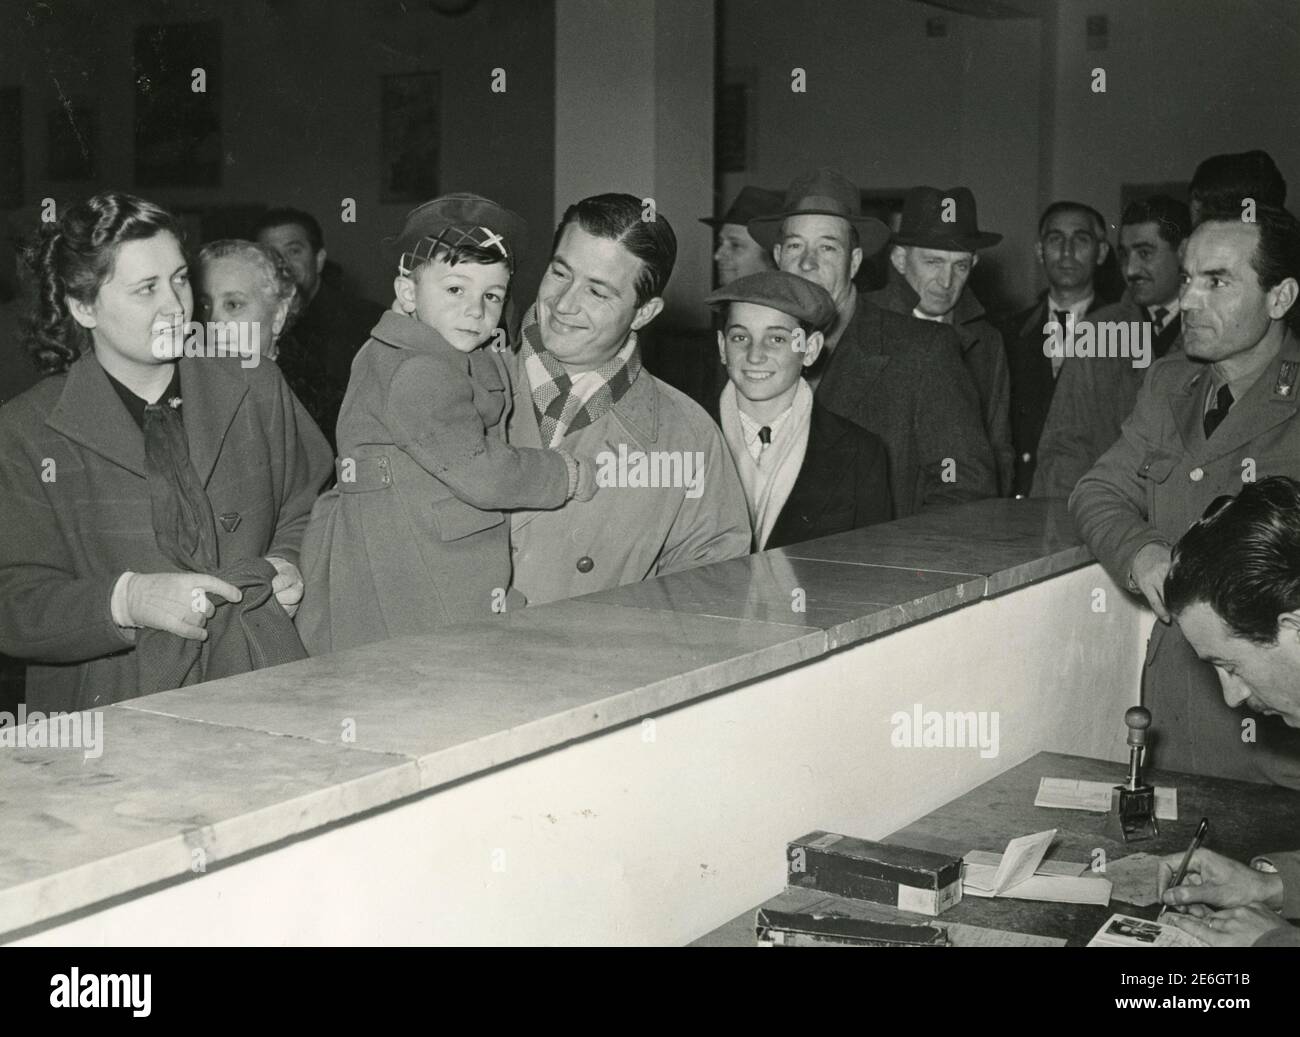 Si riunirono persone per qualche motivo burocratico, Italia anni '50 Foto Stock